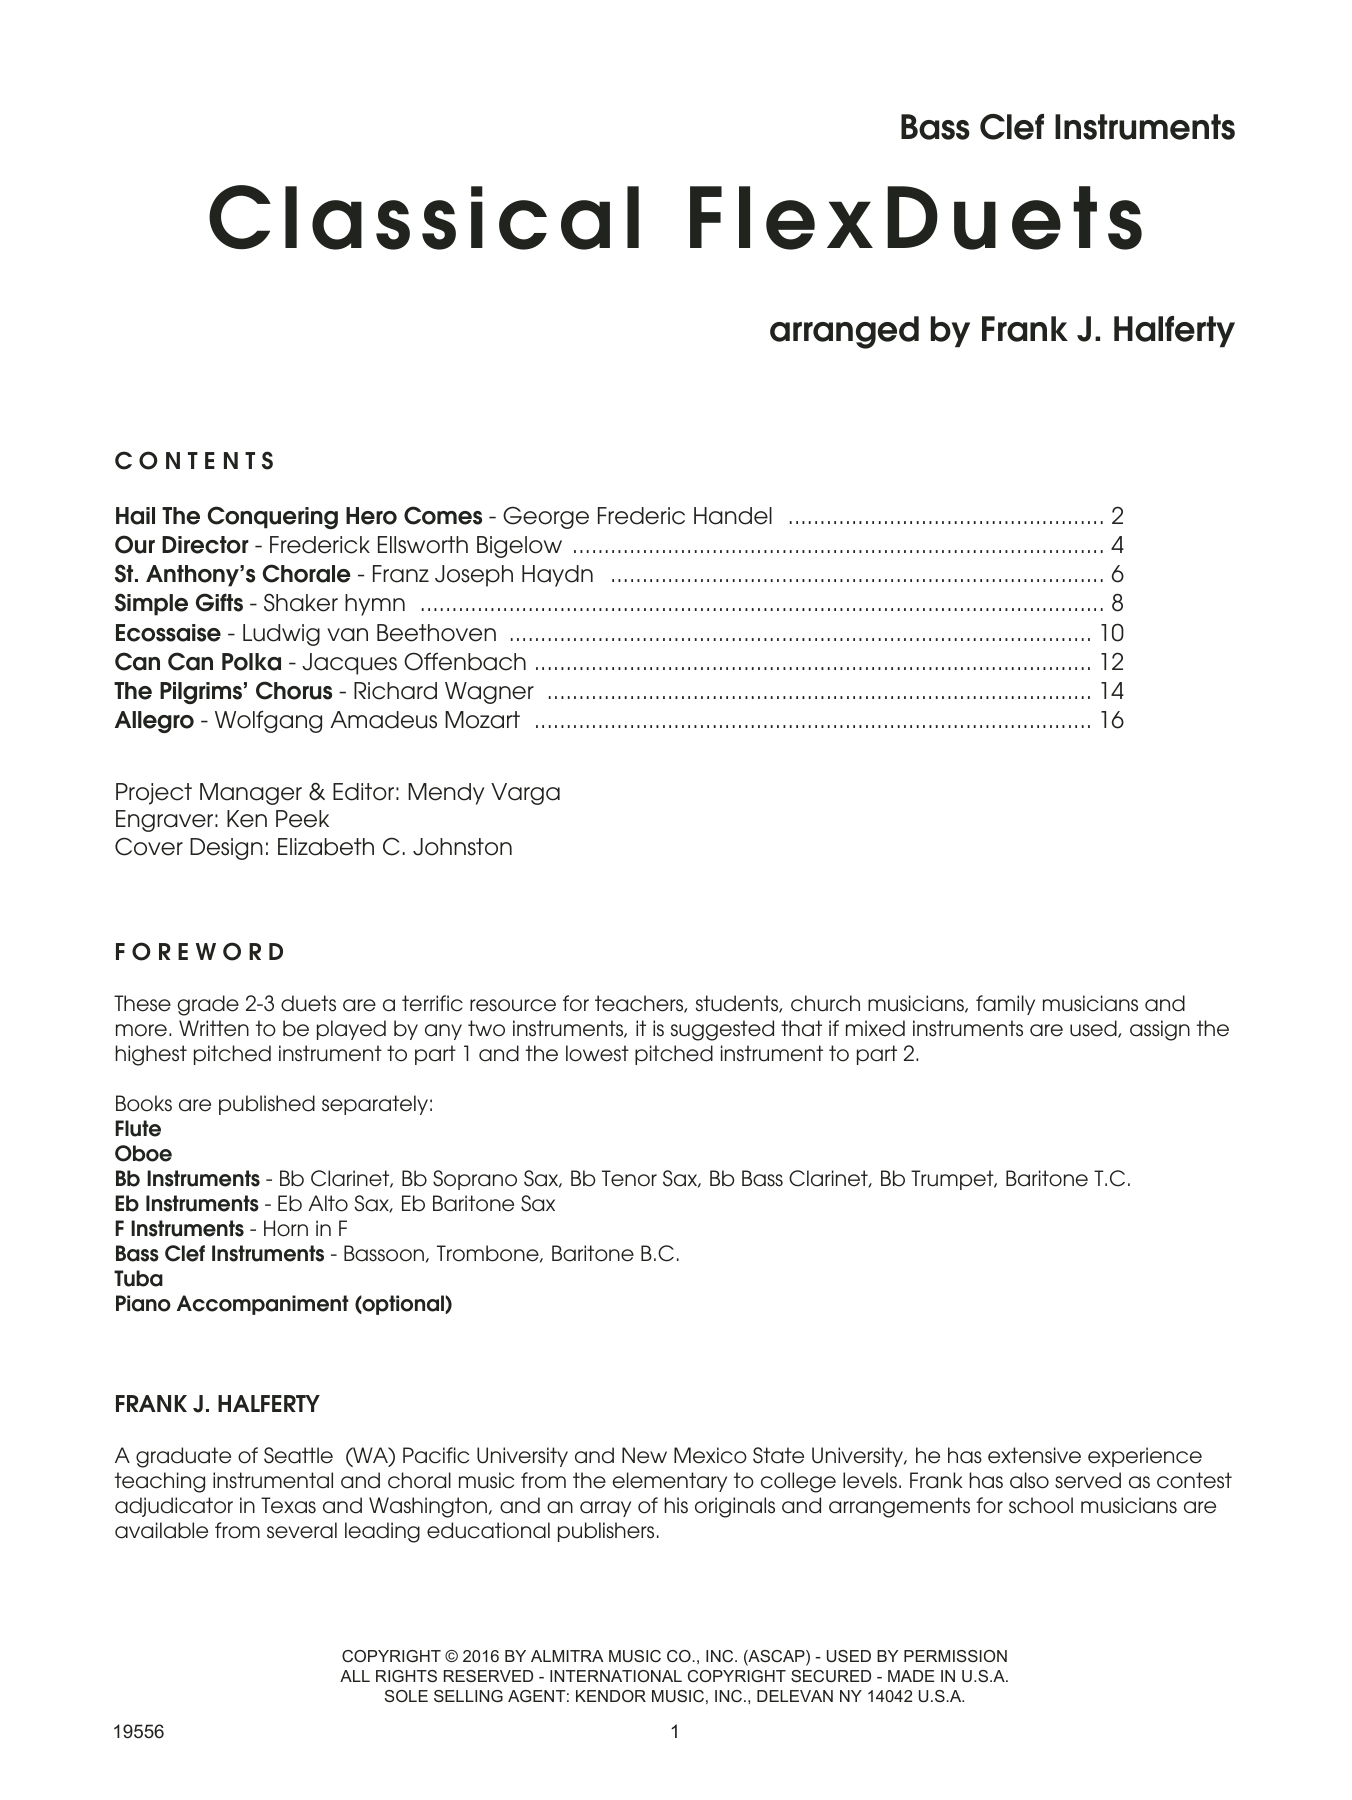 Classical FlexDuets - Bass Clef Instruments sheet music